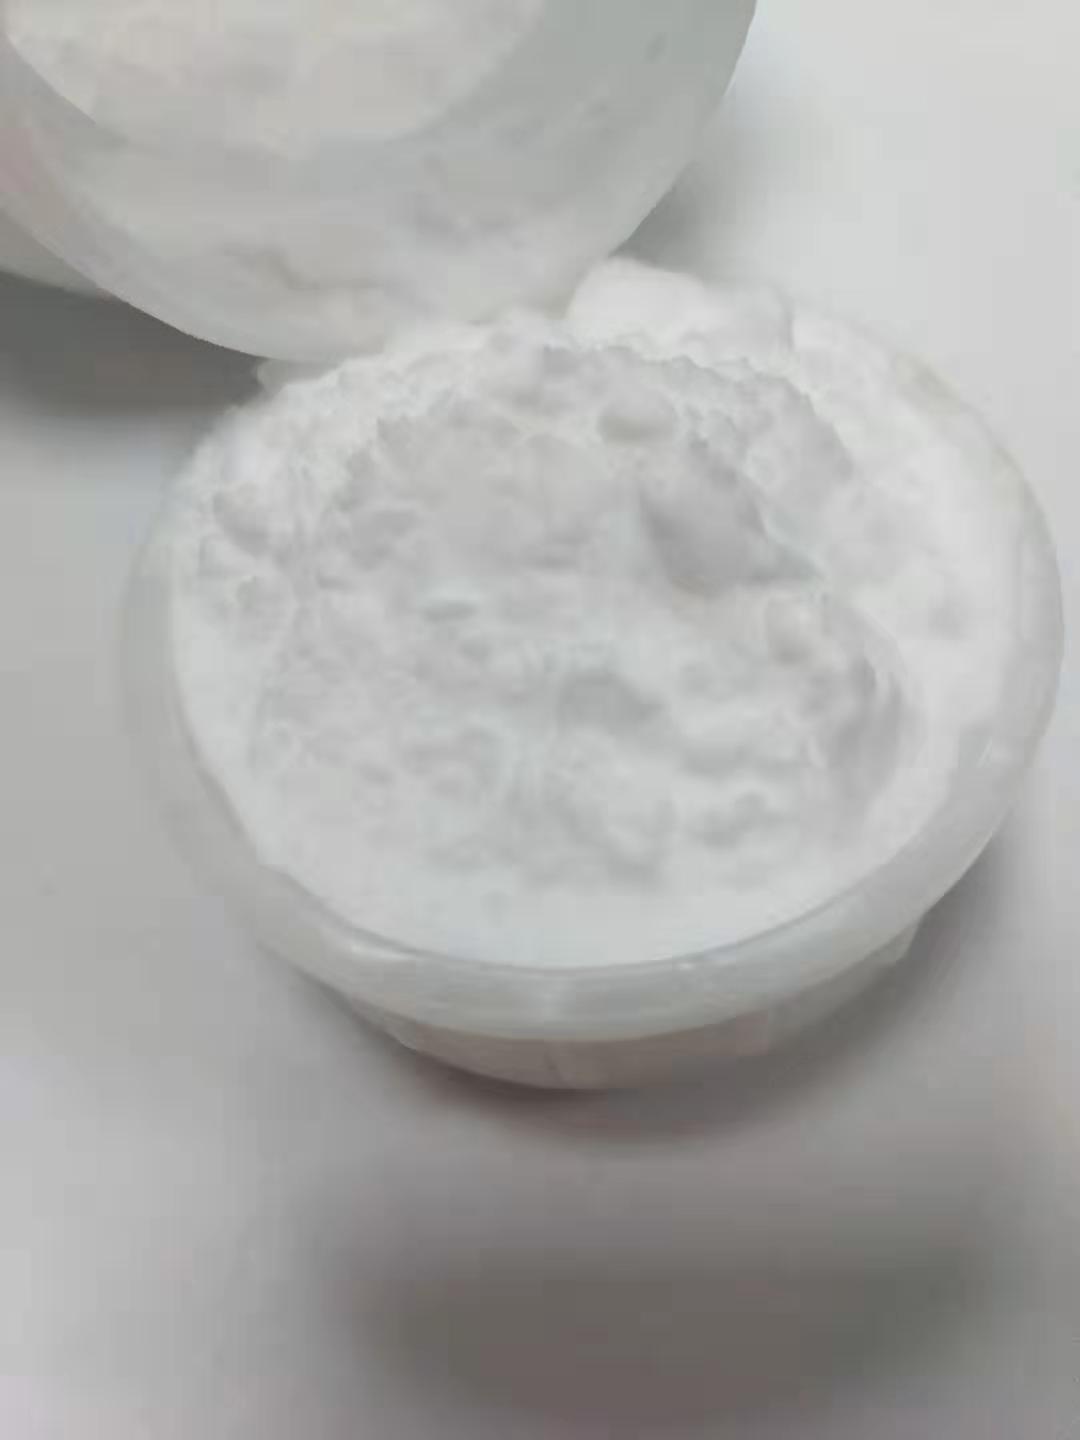 中国台湾注塑用磨砂粉磨砂料推荐厂家,磨砂粉磨砂料